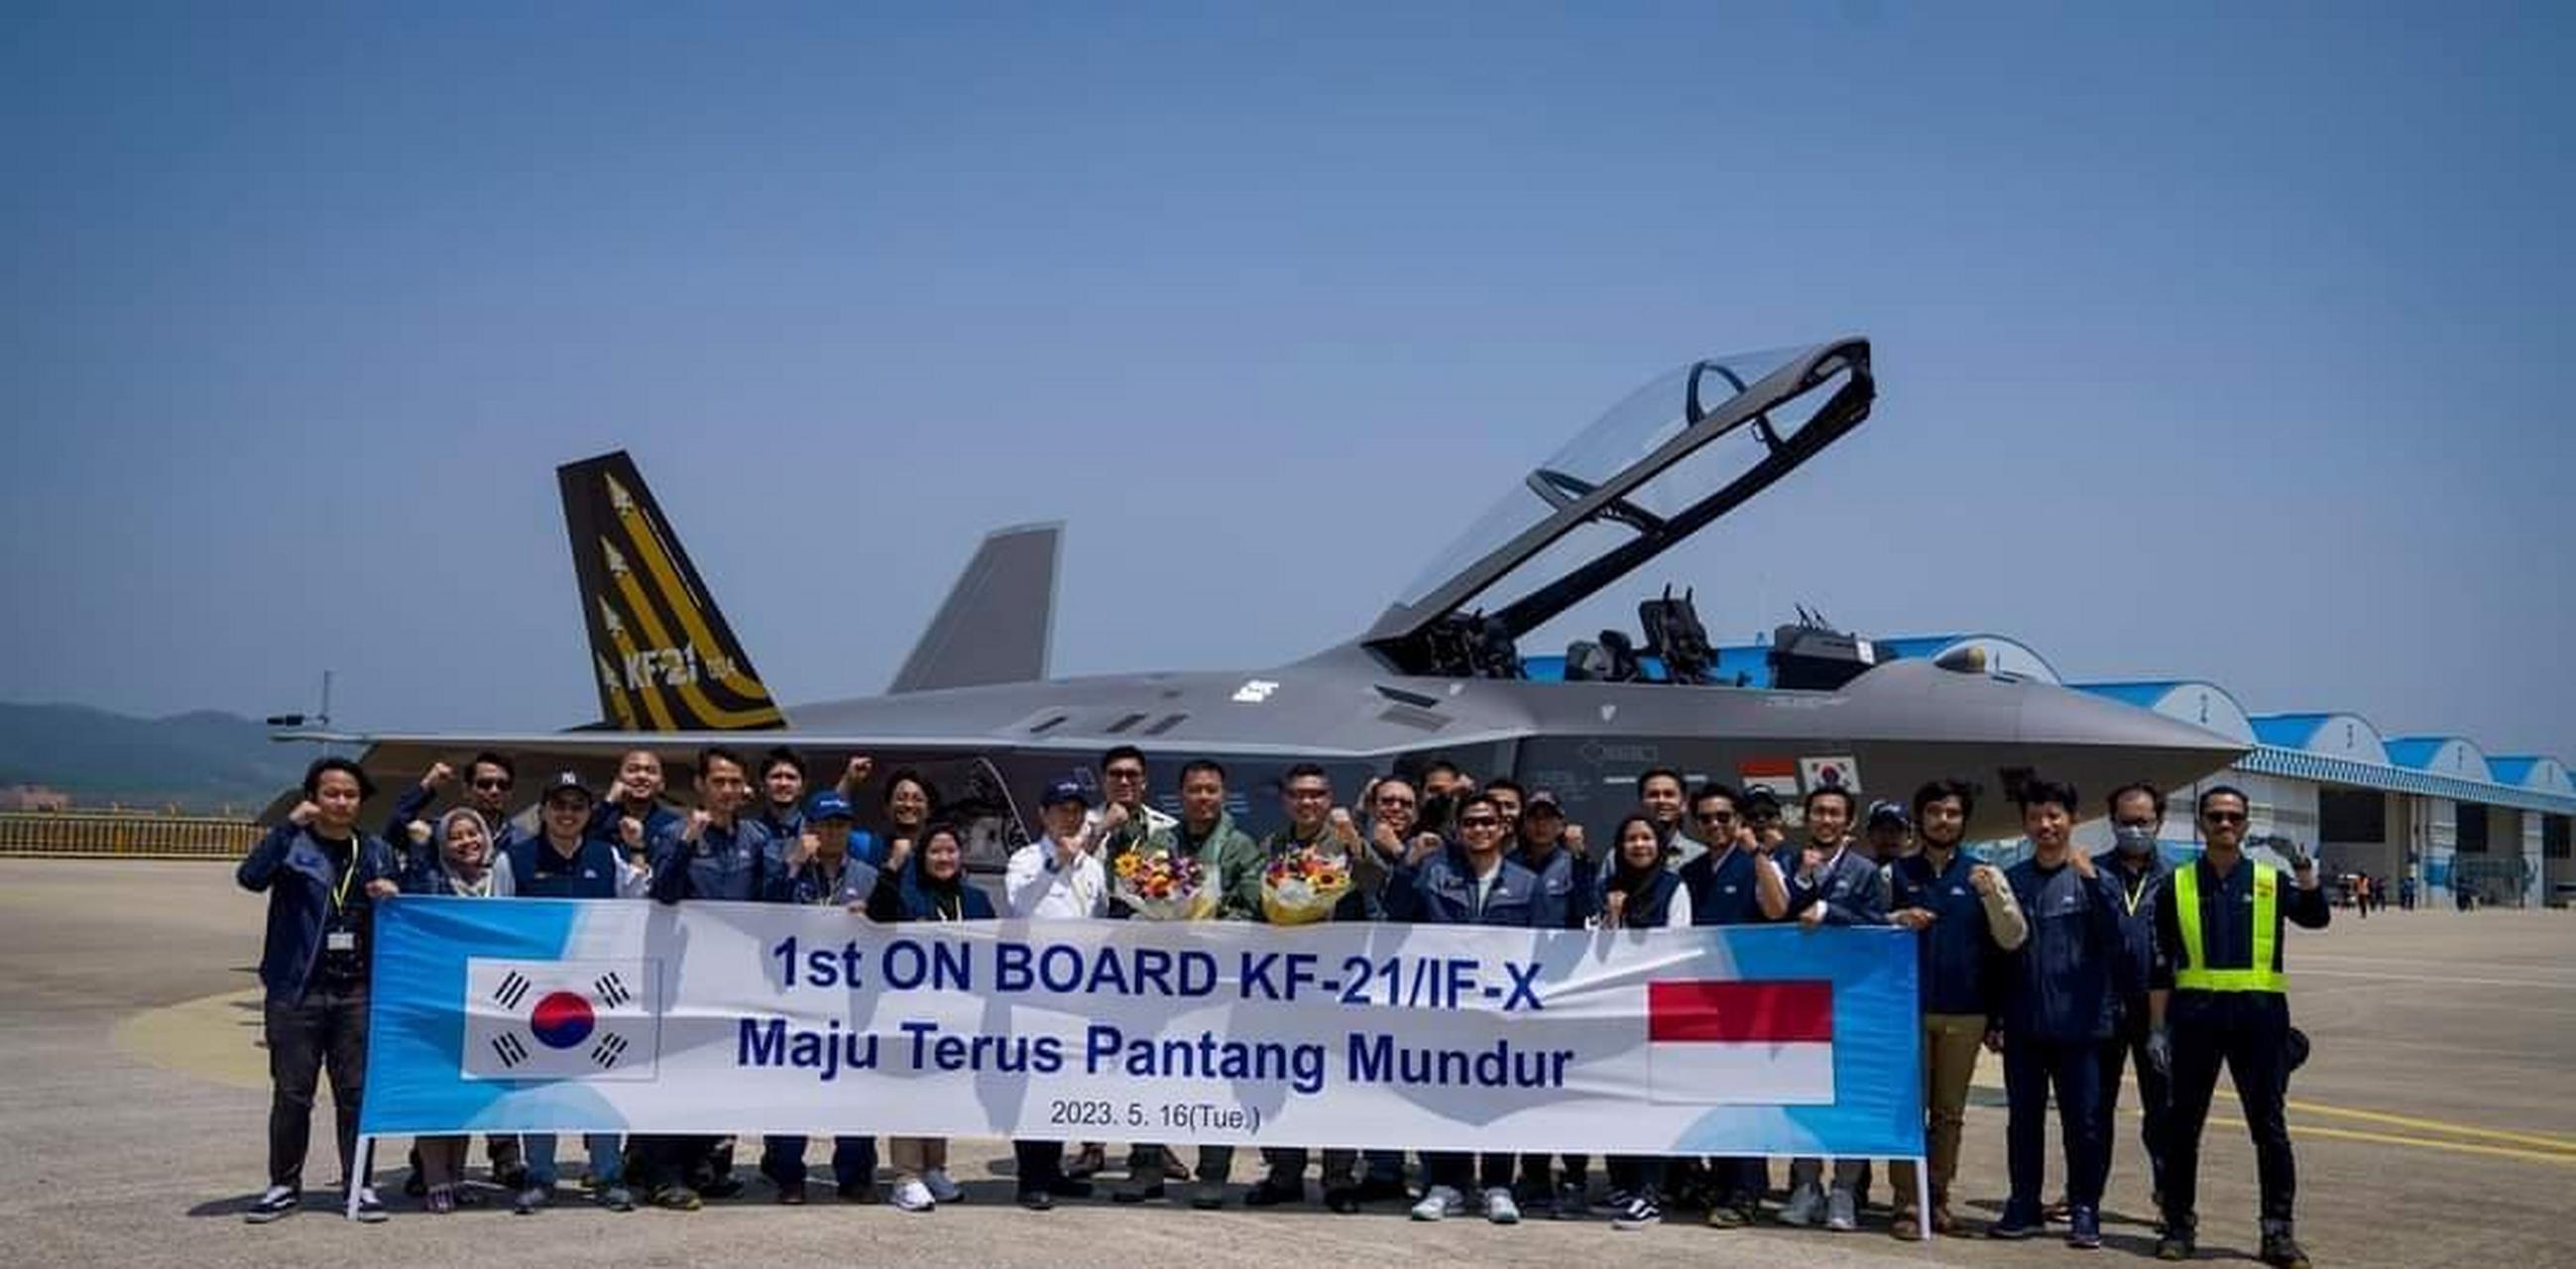 印尼空军飞行员上后座压舱体验一下得了,毕竟印尼欠着韩国kf